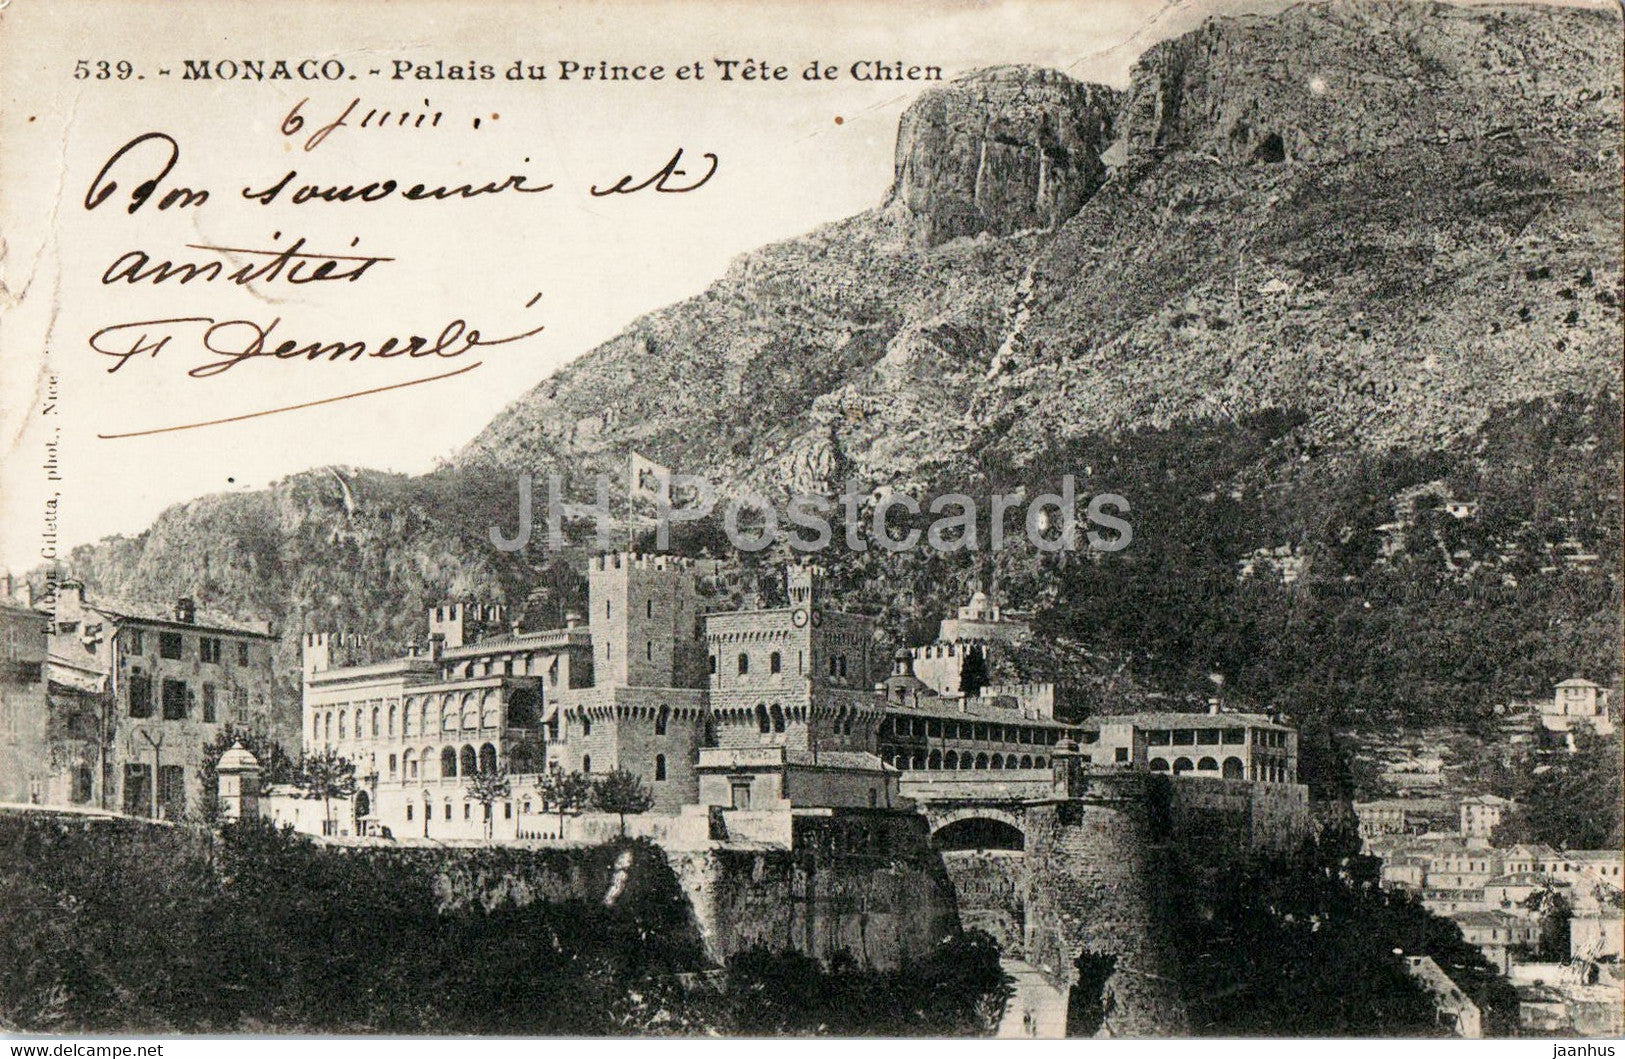 Monaco - Palais du Prince et Tete de Chien - 539 - old postcard - 1903 - Monaco - used - JH Postcards